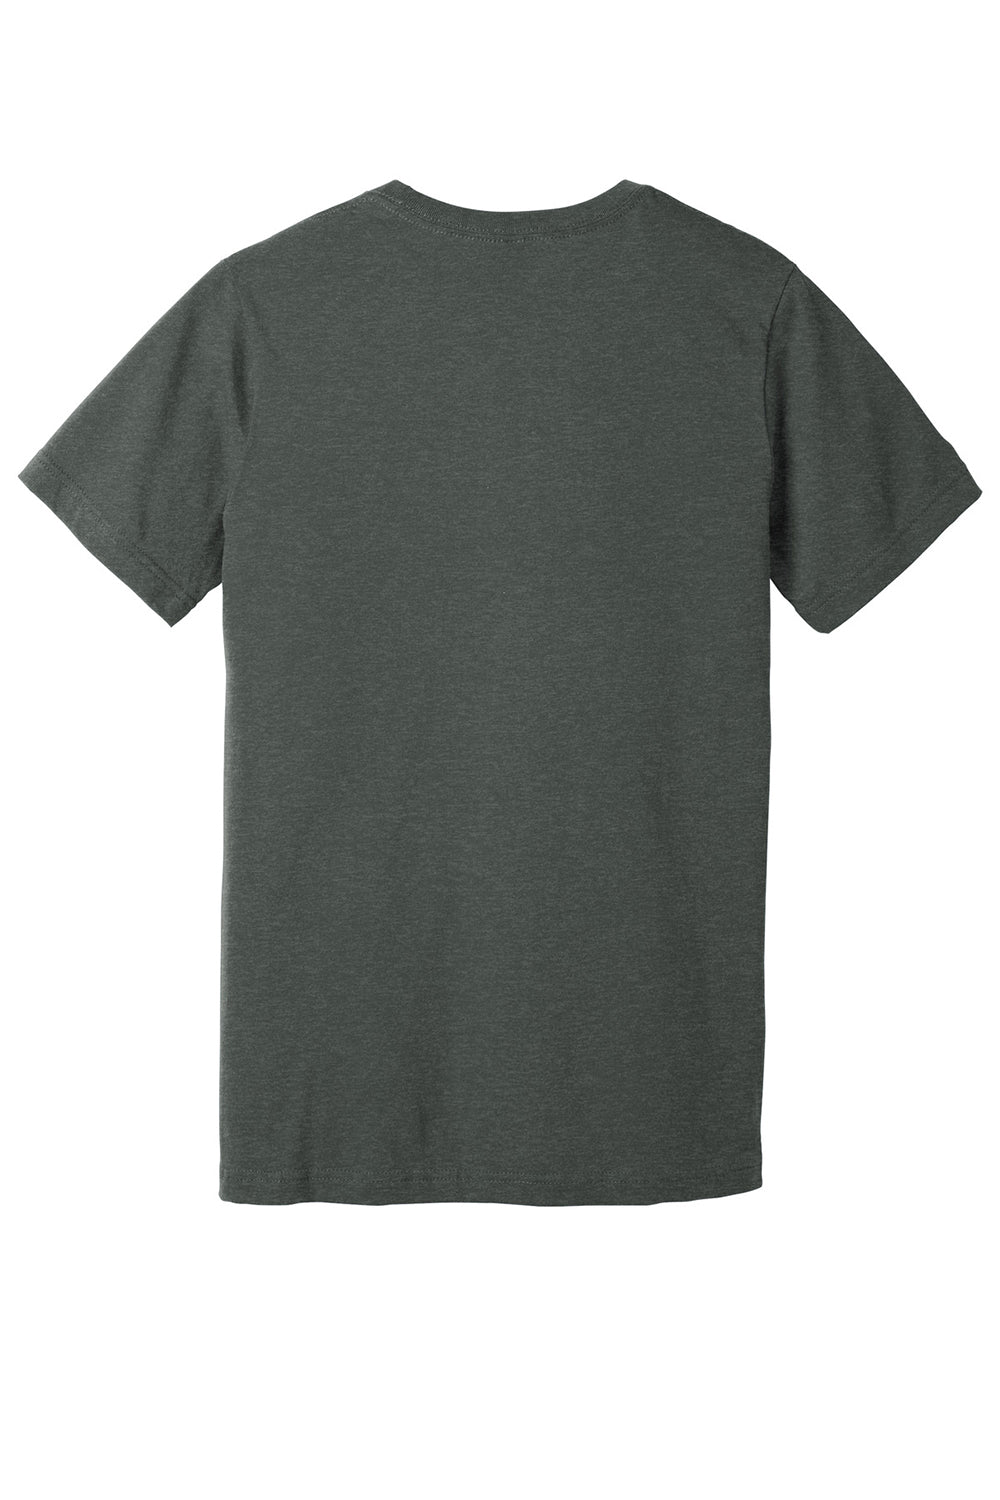 Bella + Canvas BC3005CVC Mens CVC Short Sleeve V-Neck T-Shirt Heather Deep Grey Flat Back